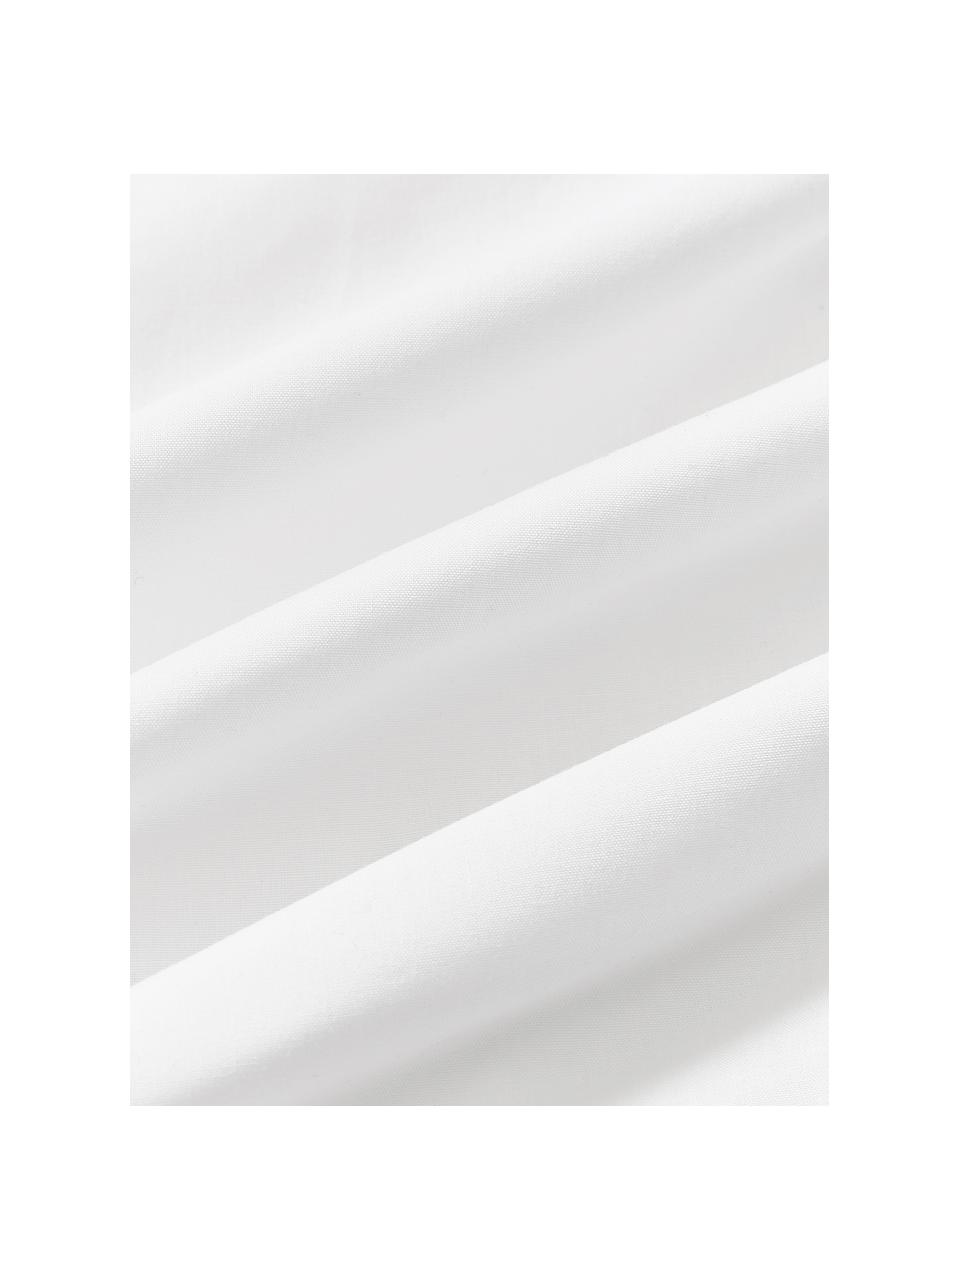 Funda nórdica de percal en look origami Brody, Blanco, Cama 180/200 cm (260 x 240 cm)